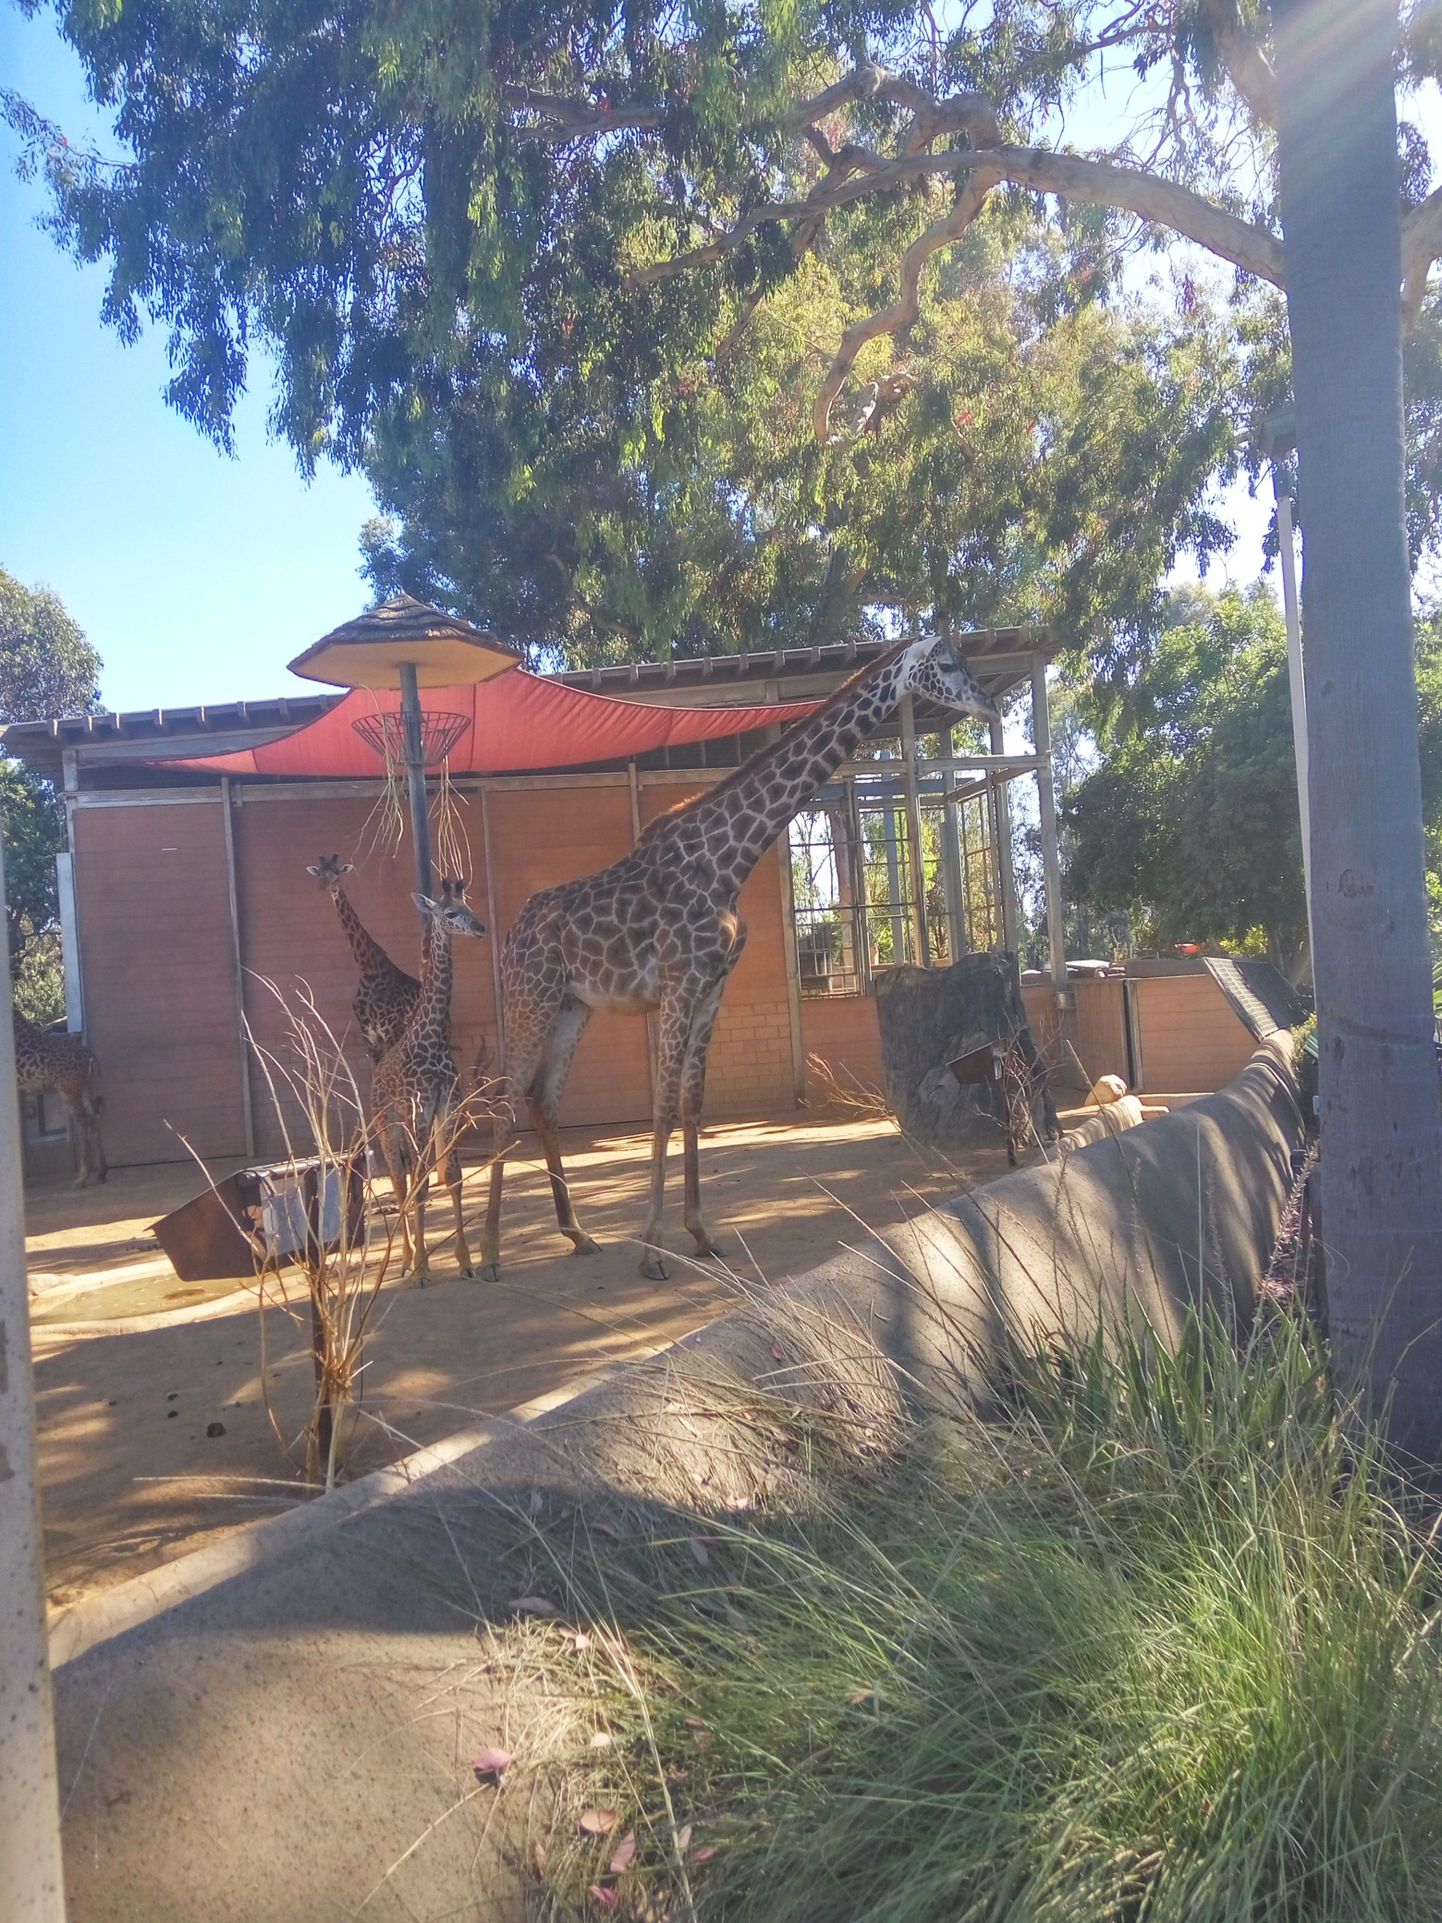 В зоопарке Сан-Диего для животных созданы условия, близкие к их среде обитания, и выглядят там звери достаточно довольными.